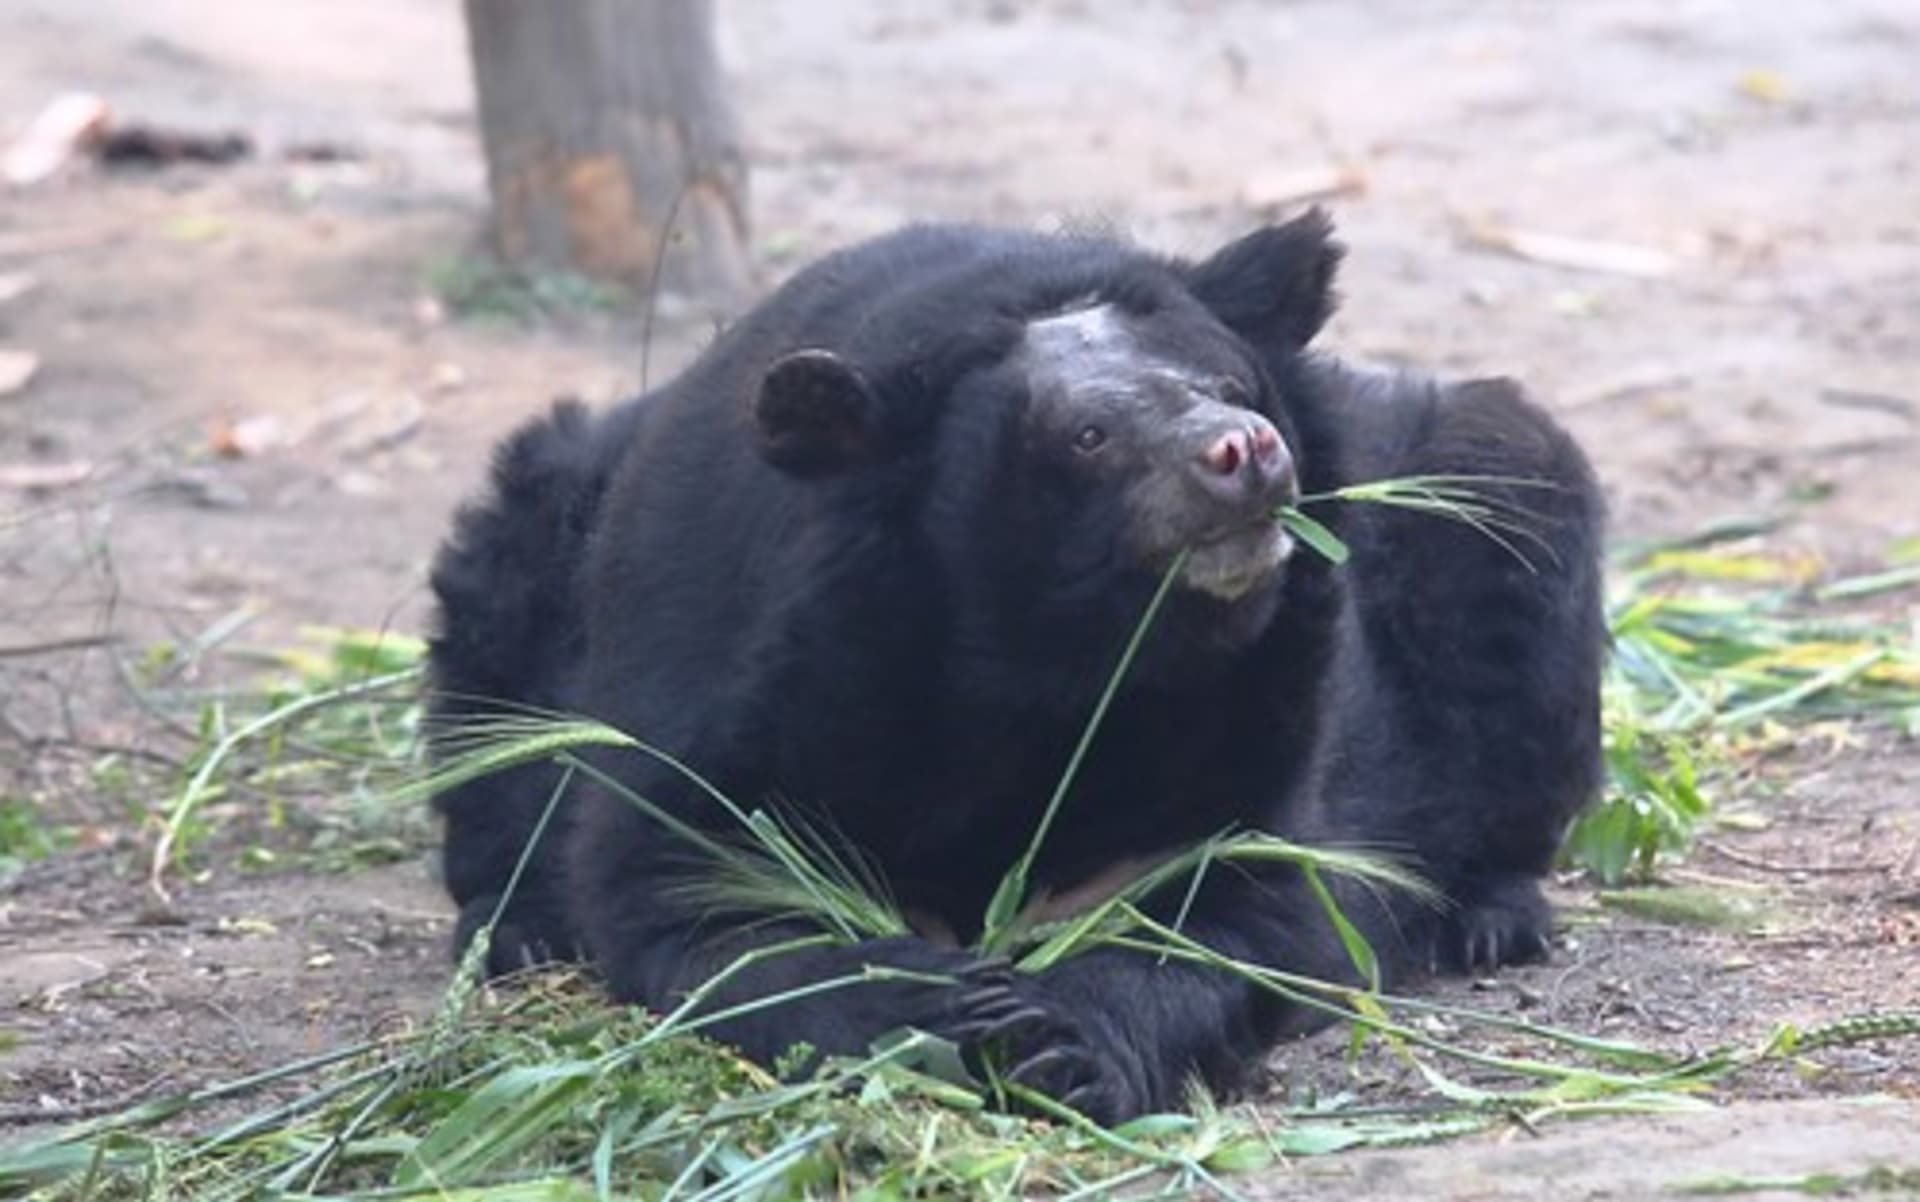  V otřesných podmínkách farem živoří desítky tisíc medvědů. Zdroj: Animals Asia